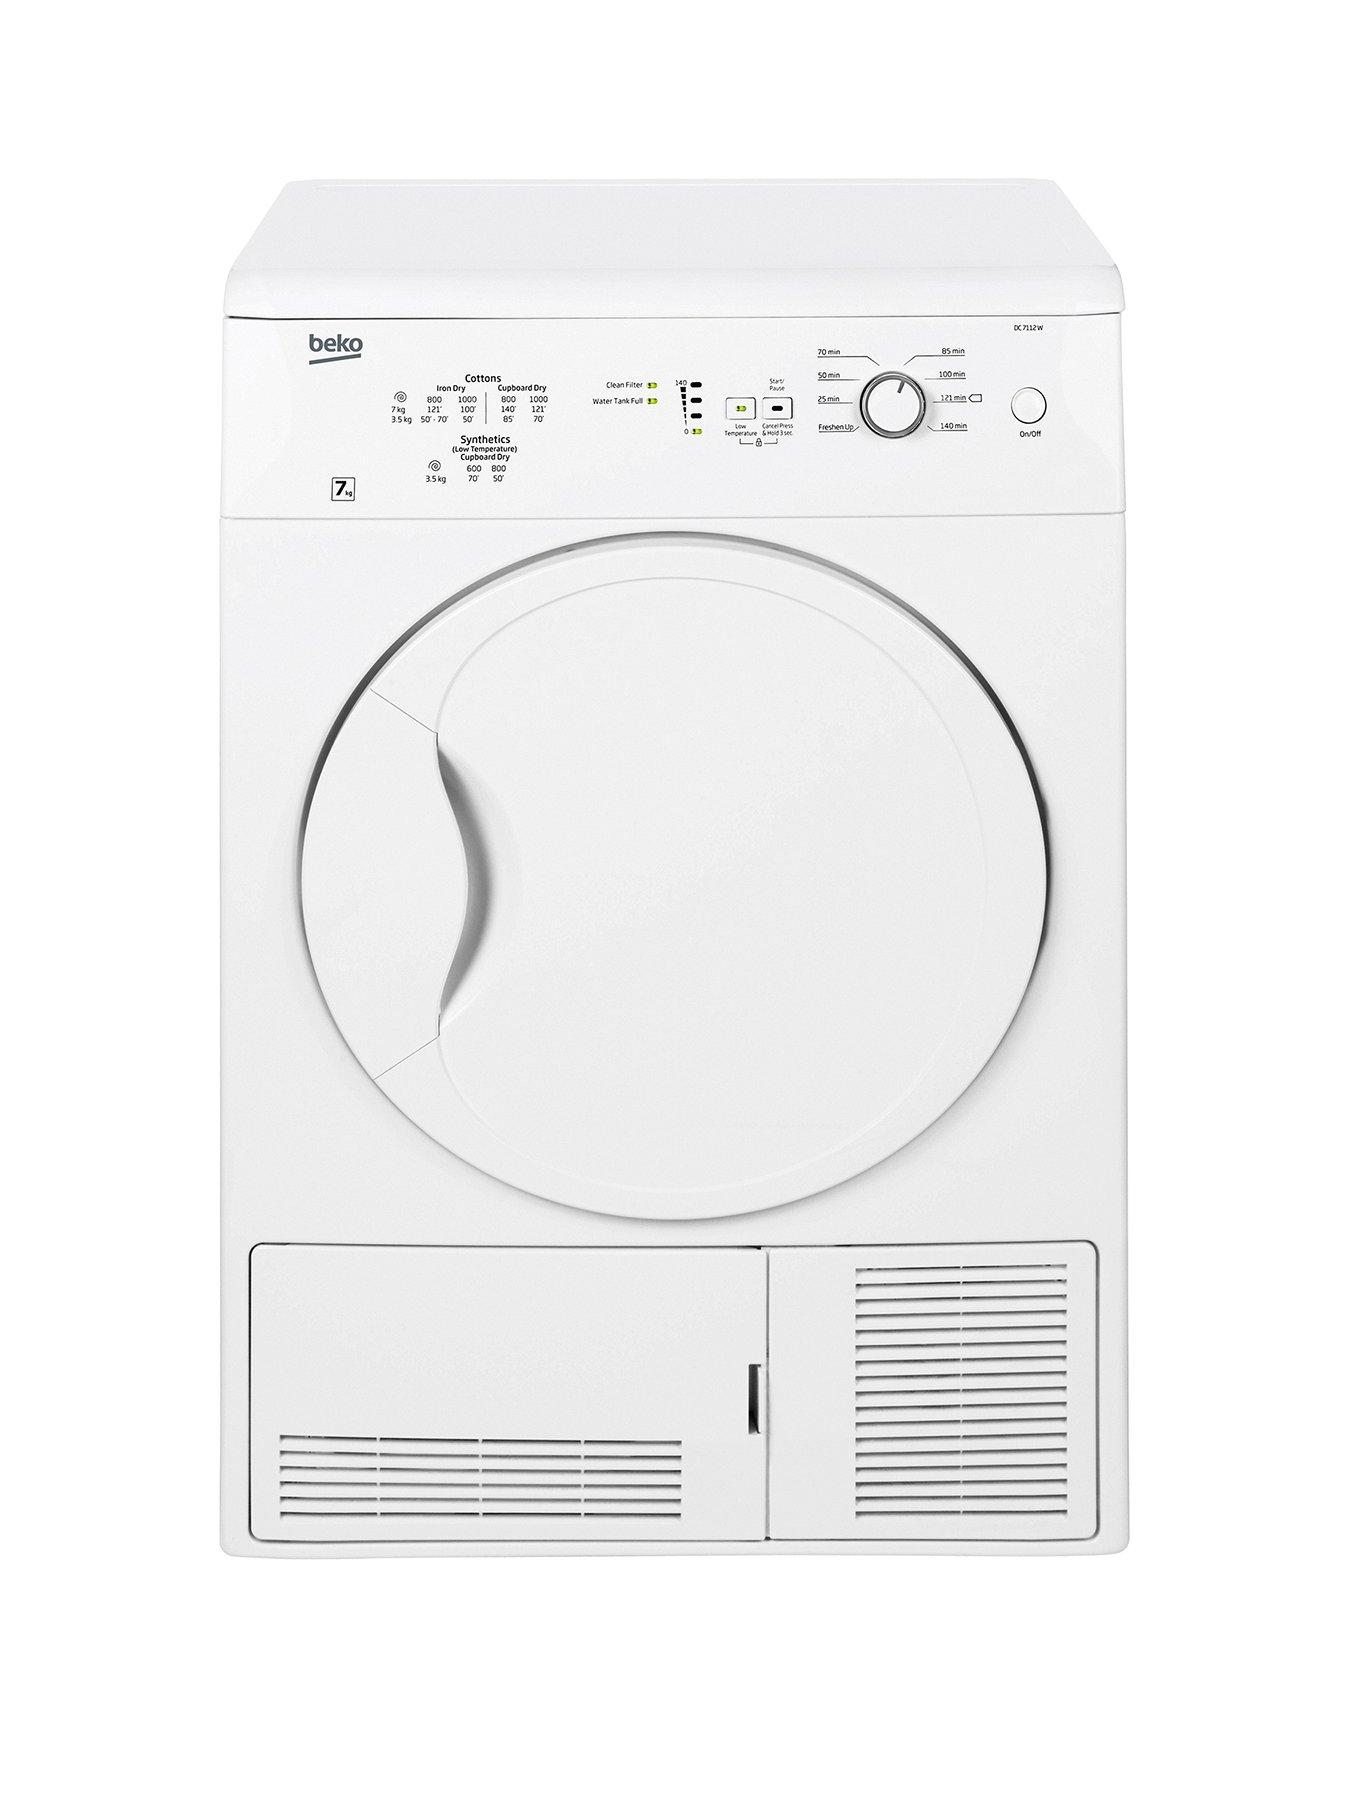 Beko Dc7112W 7Kg Condenser Dryer – White